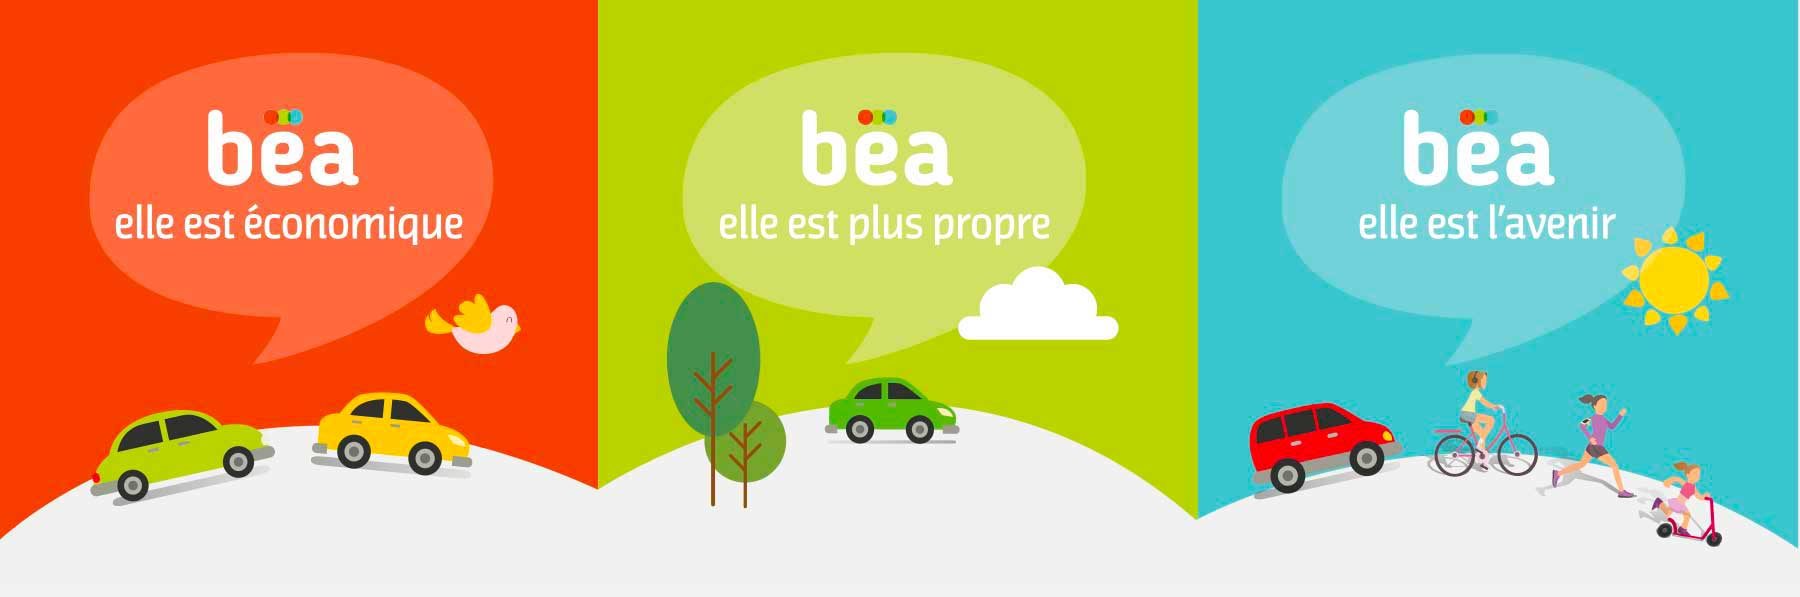 L'agence WESTANGO a imaginé la charte graphique de BEA, borne électrique pour automobile